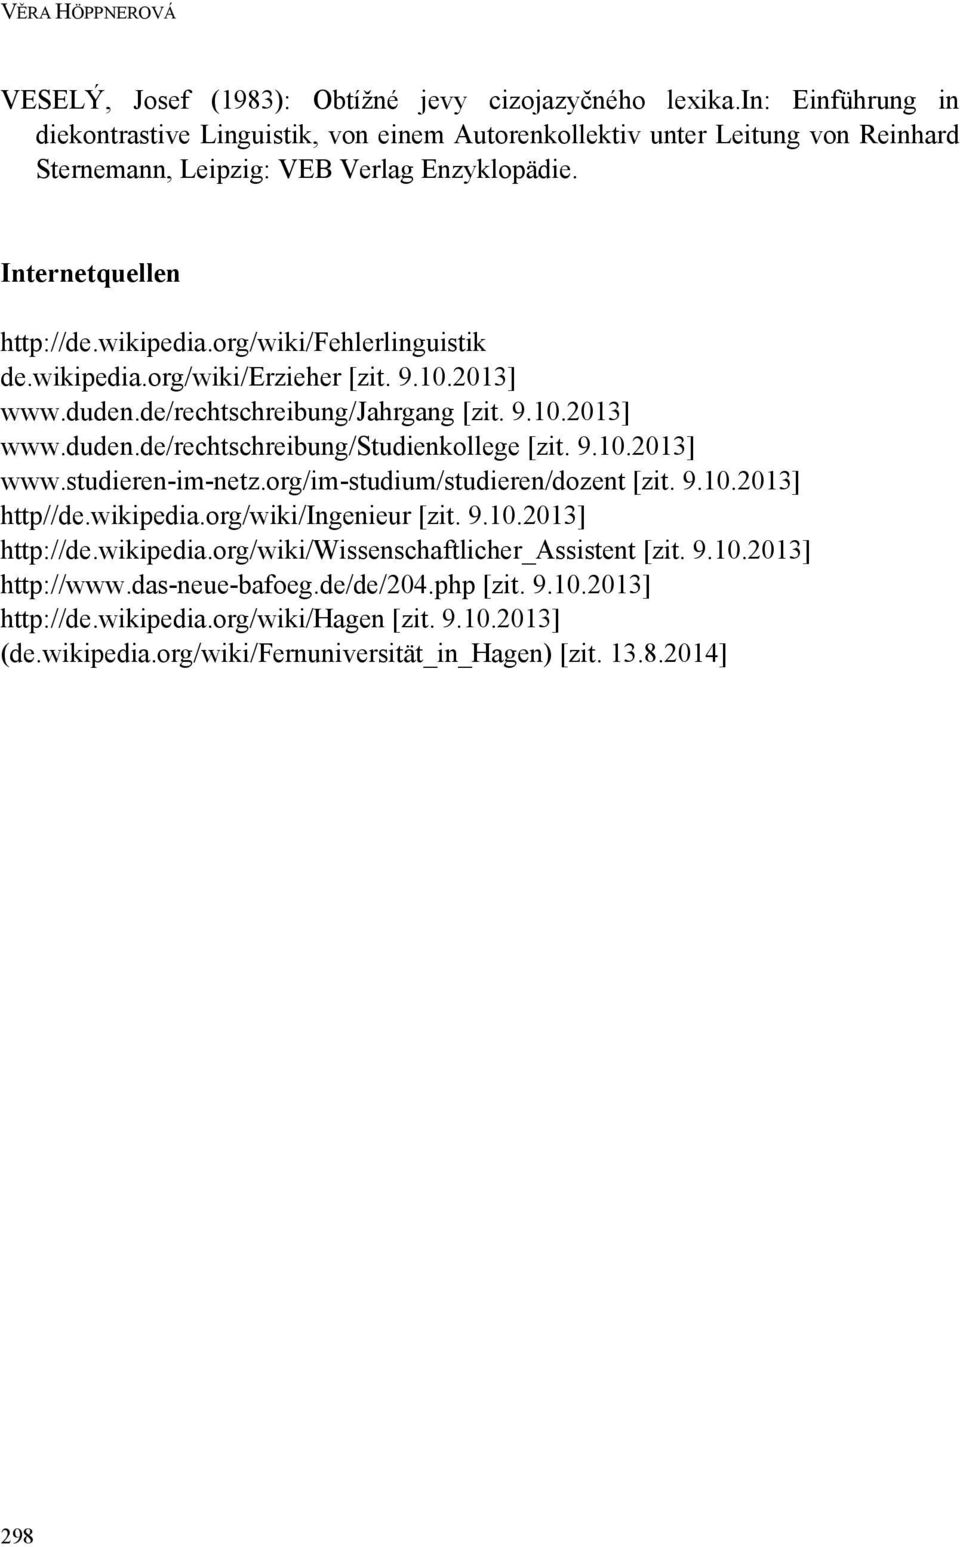 org/wiki/fehlerlinguistik de.wikipedia.org/wiki/erzieher [zit. 9.10.2013] www.duden.de/rechtschreibung/jahrgang [zit. 9.10.2013] www.duden.de/rechtschreibung/studienkollege [zit. 9.10.2013] www.studieren-im-netz.